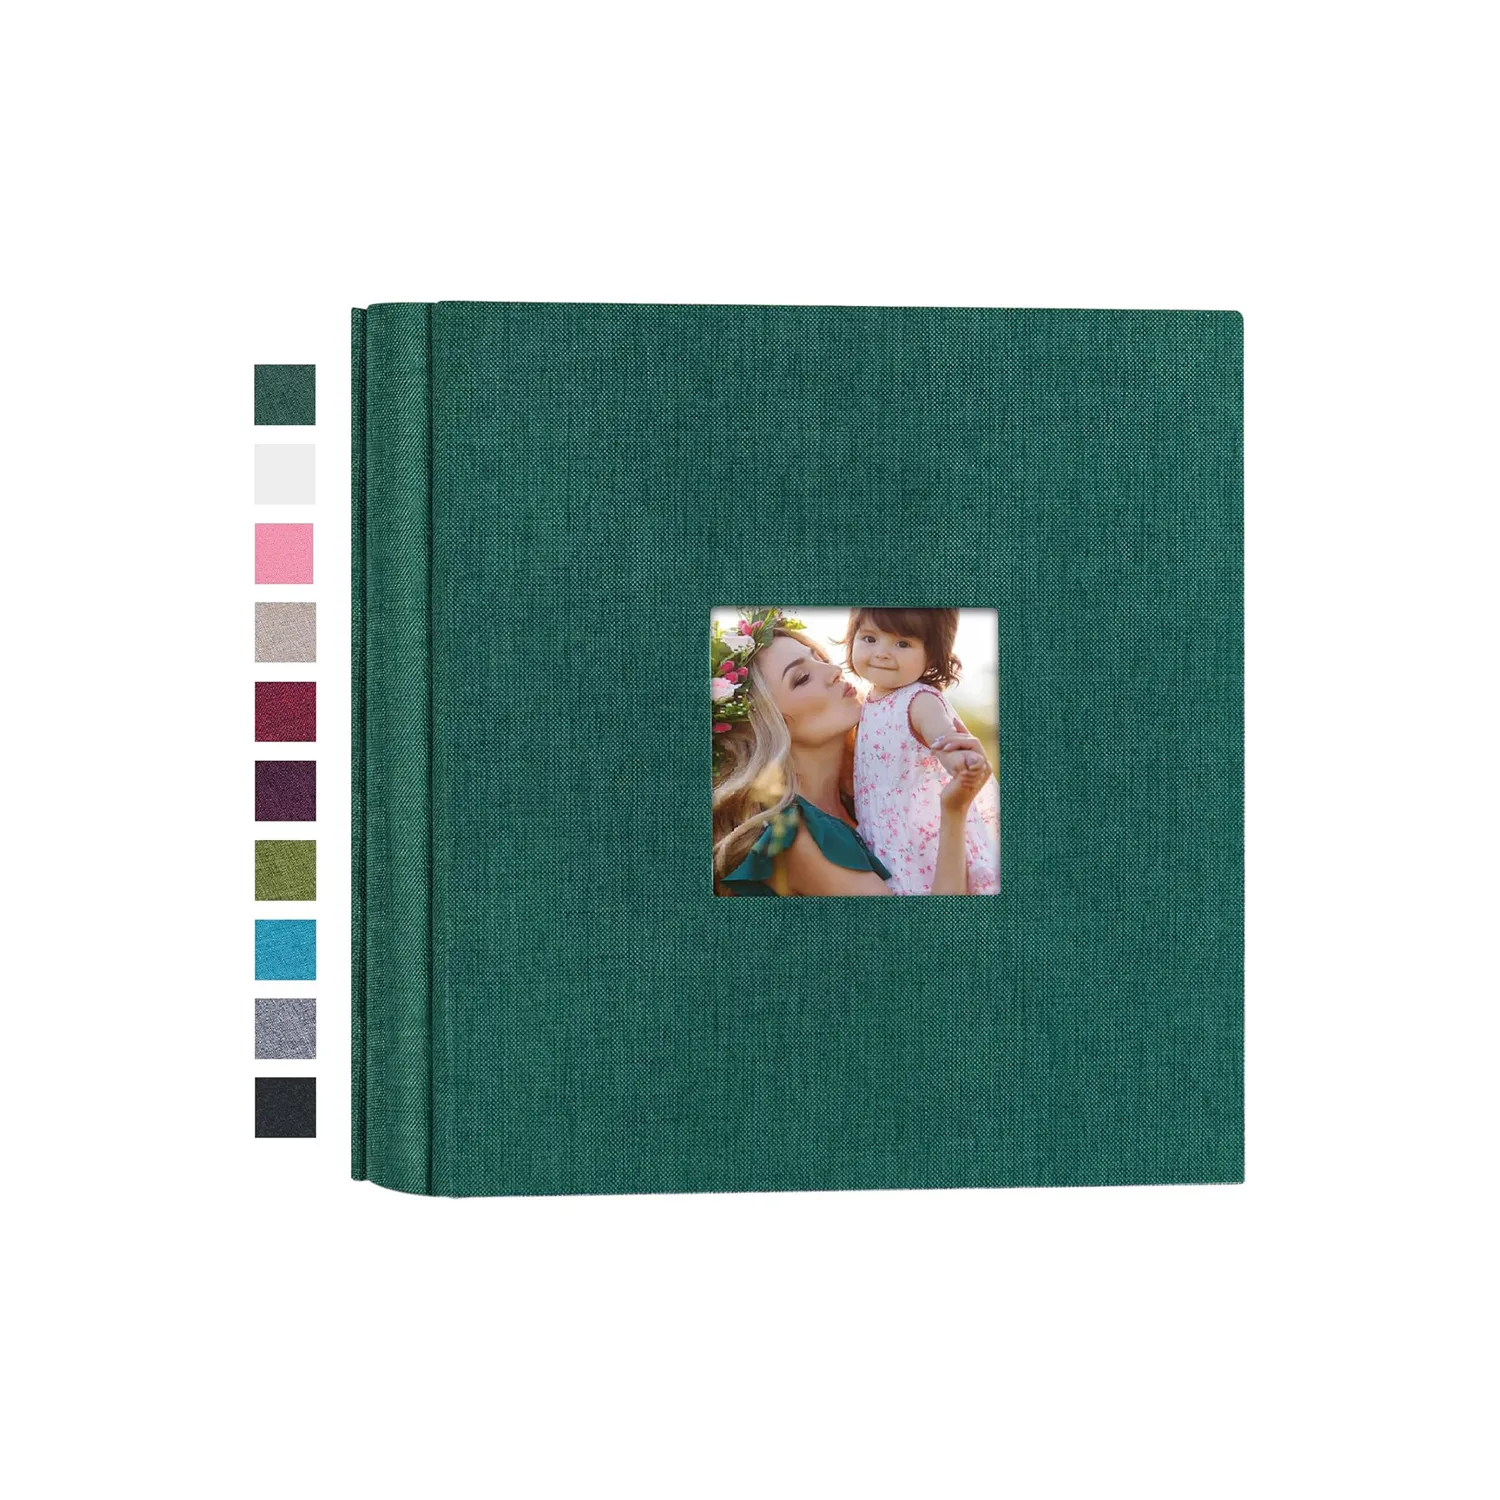 البيع بالجملة تصميم نموذج مخصص لبطاقة الصور ألبوم صور ورقية ألبوم صور 4×6 تخرج ألبوم من الكتان صورة الذكرى